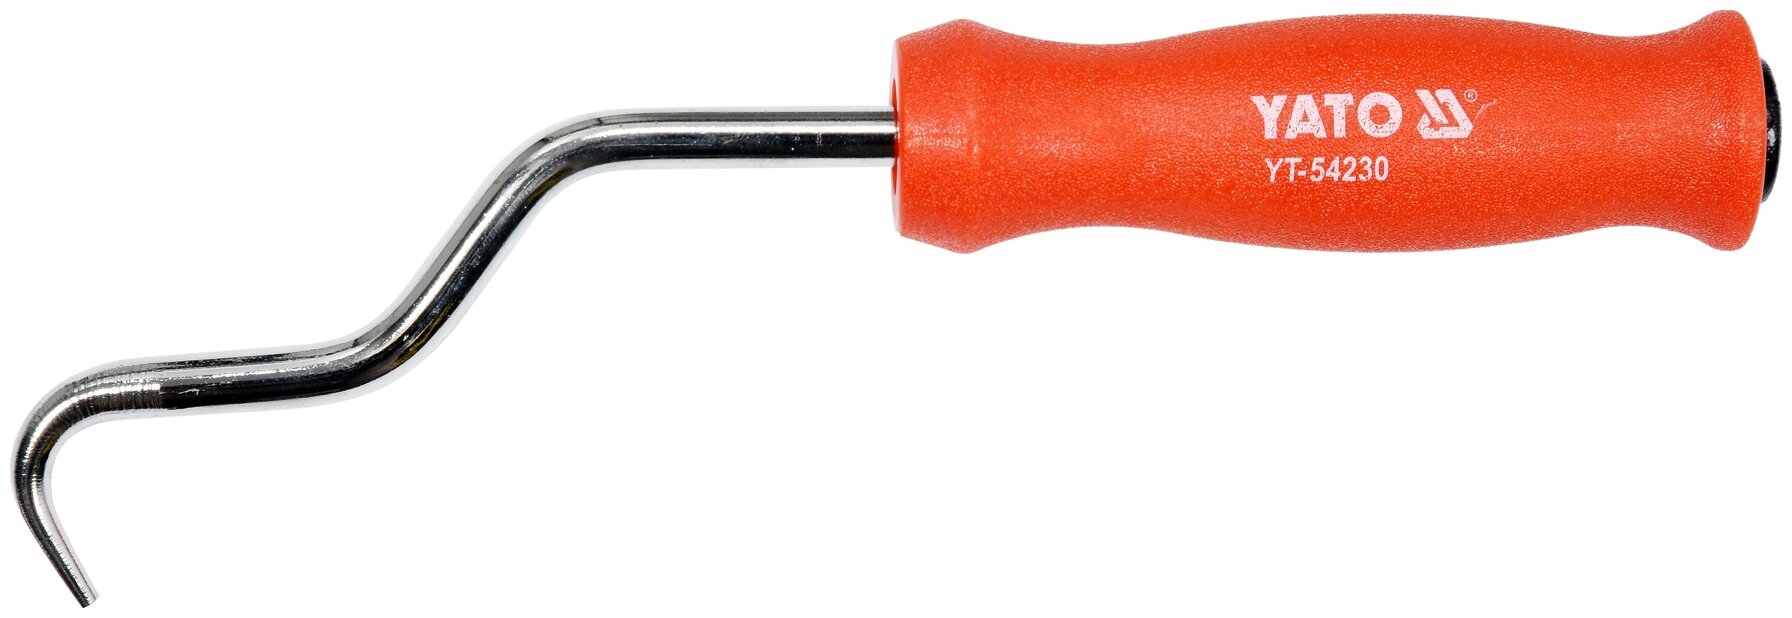 Крюк для вязки арматуры YATO YT-54230